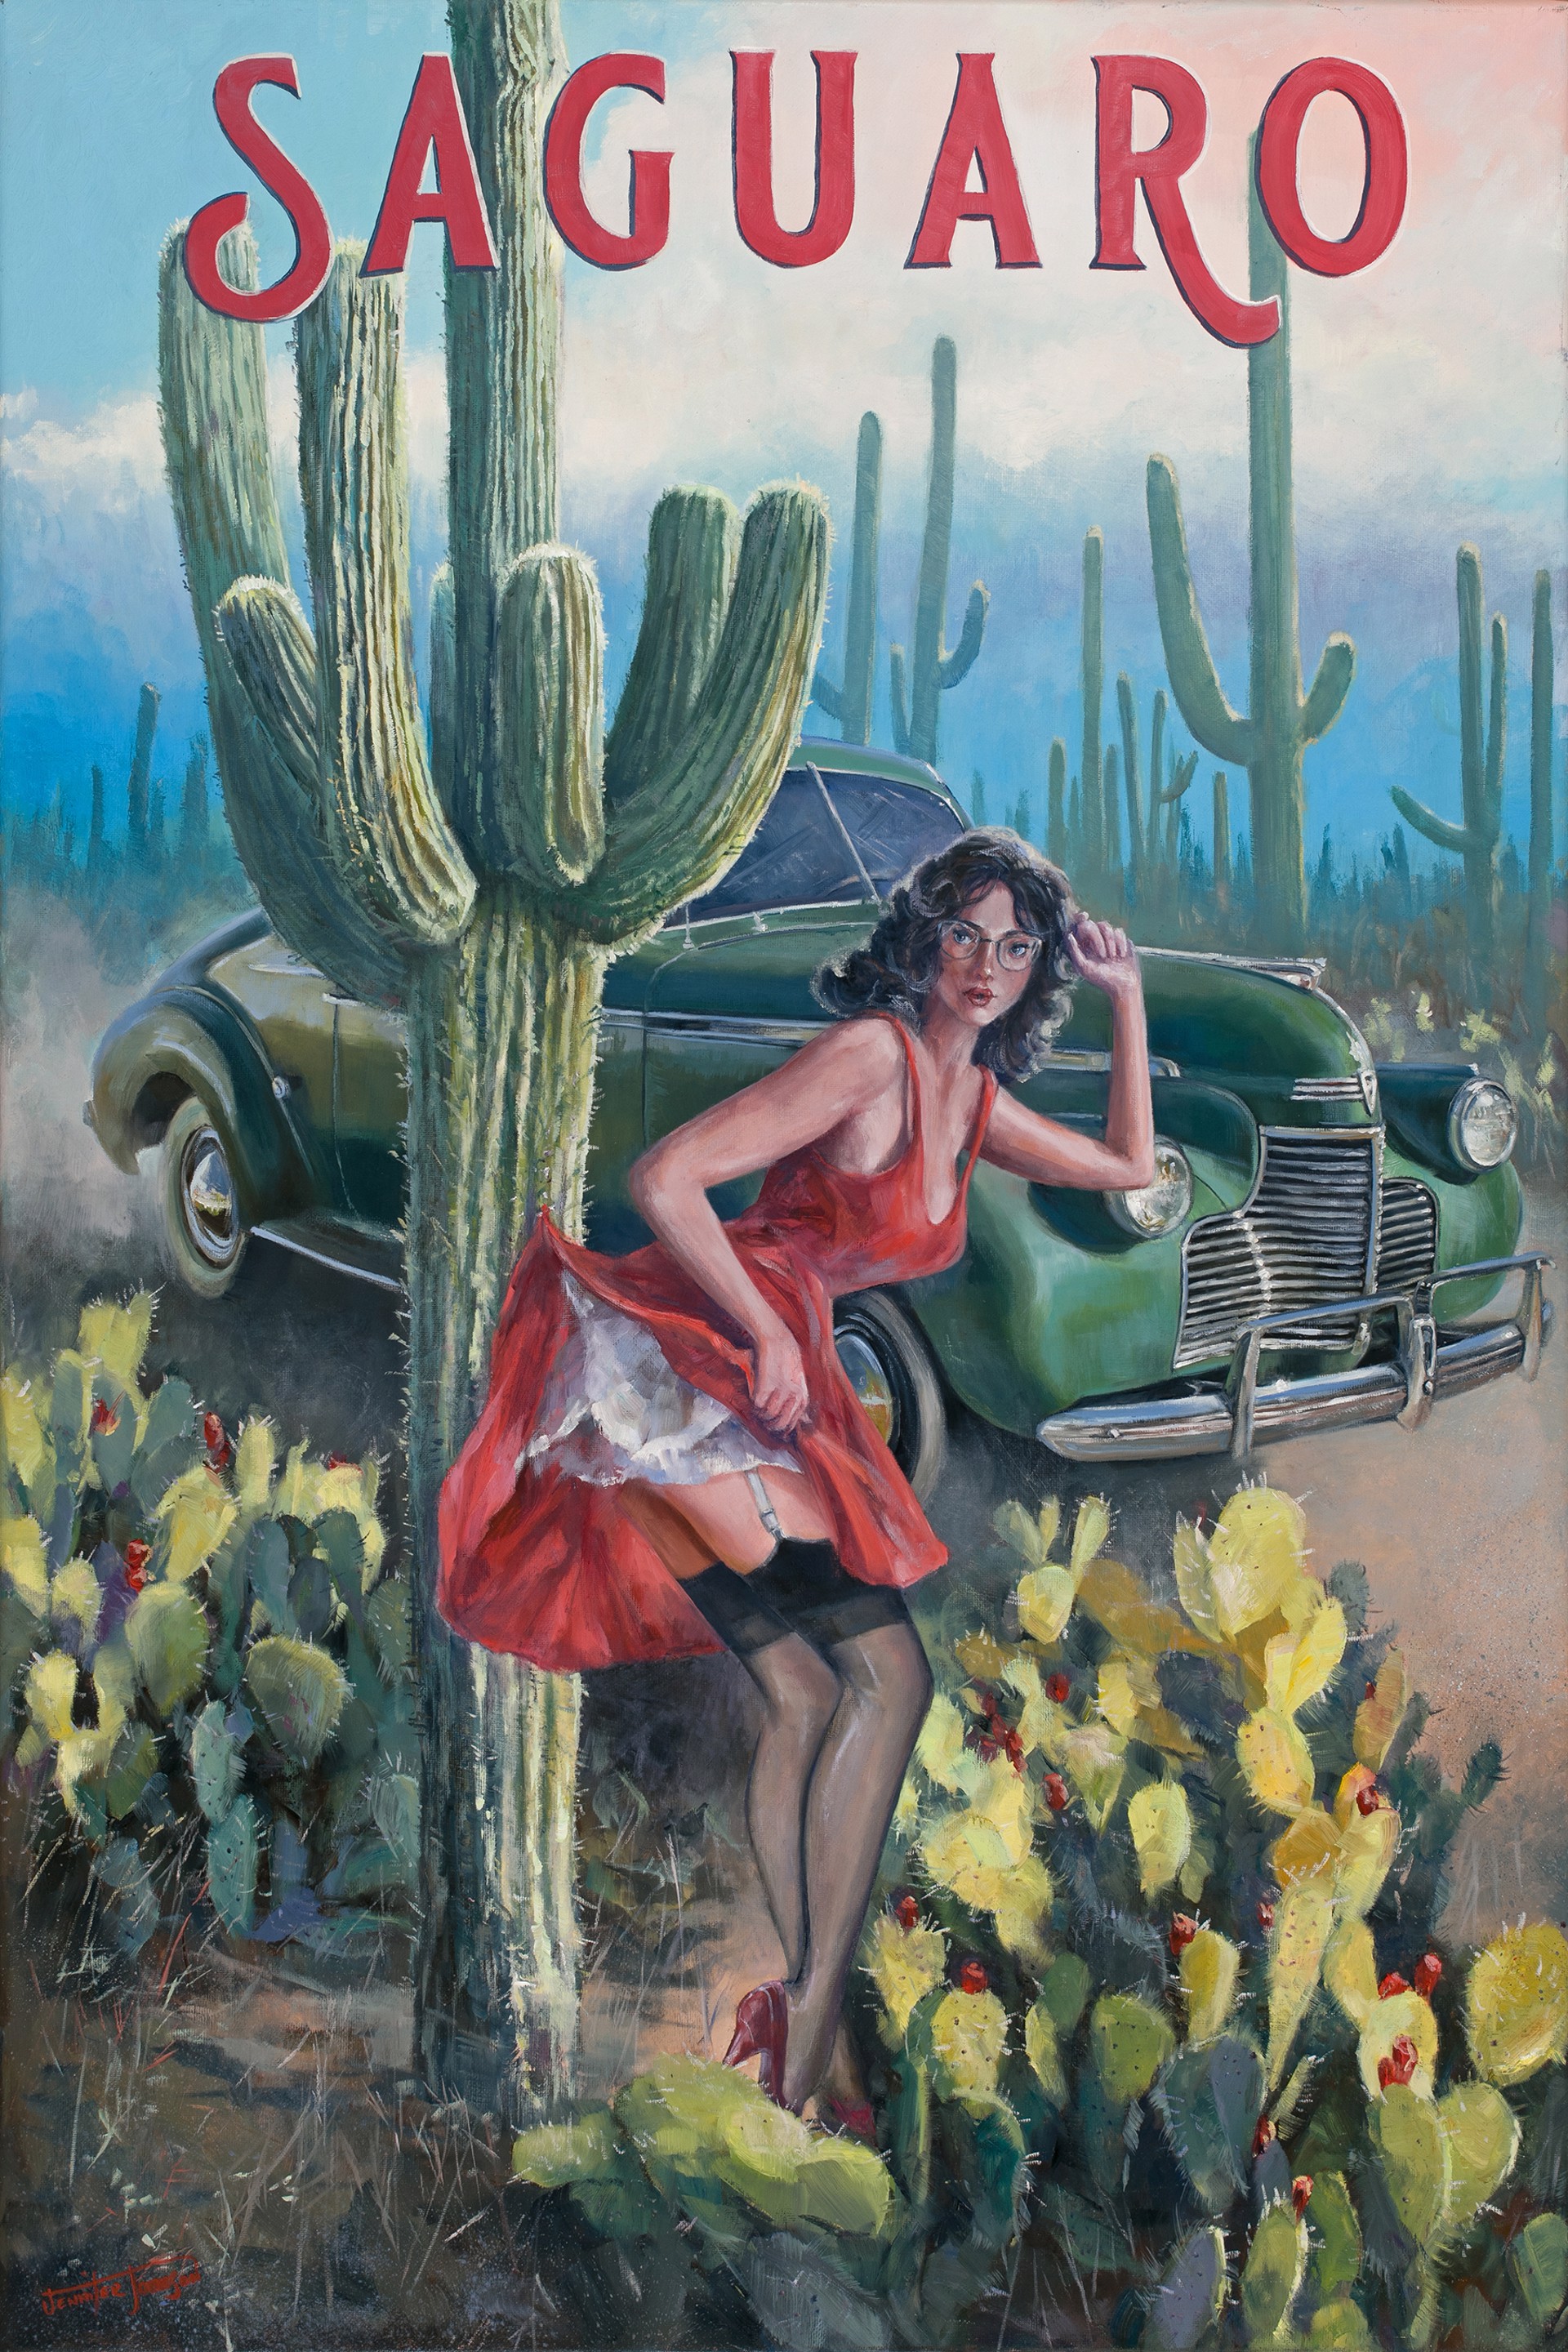 Saguaro's Embrace by Jennifer Johnson